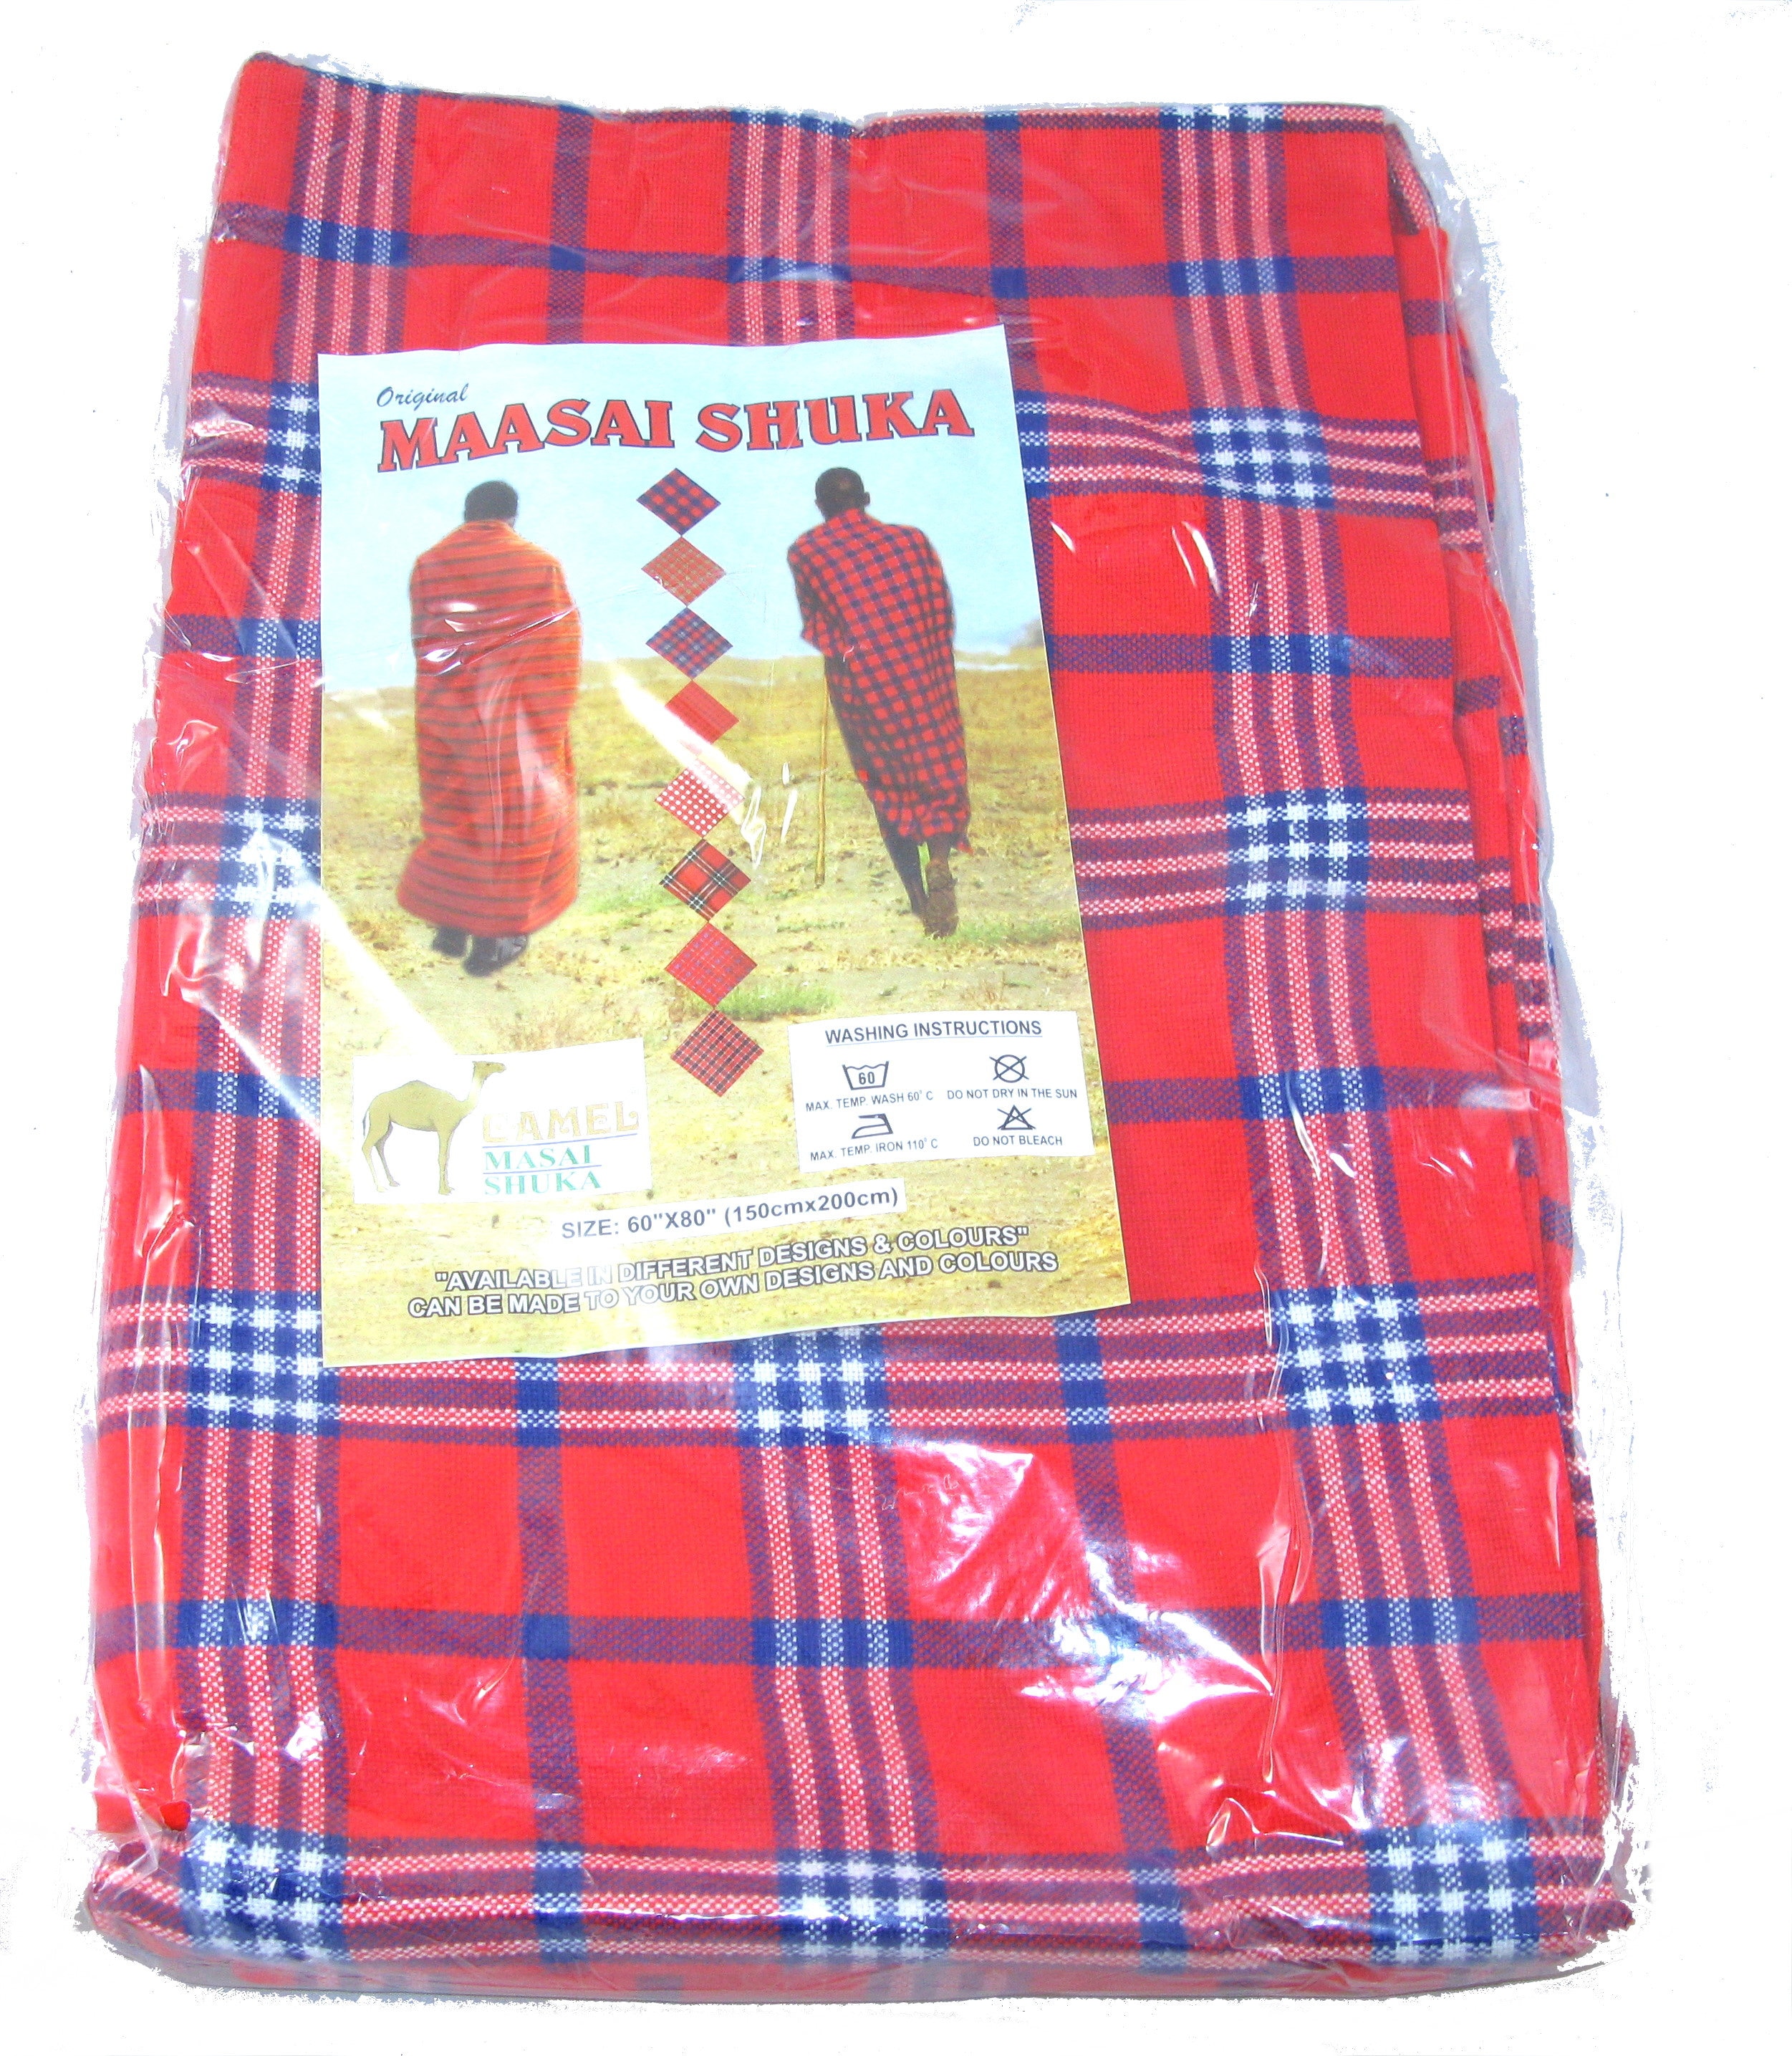  African Masai - Maasai Shuka Blanket - Multi-Colored Striped Masai  Shuka : Home & Kitchen